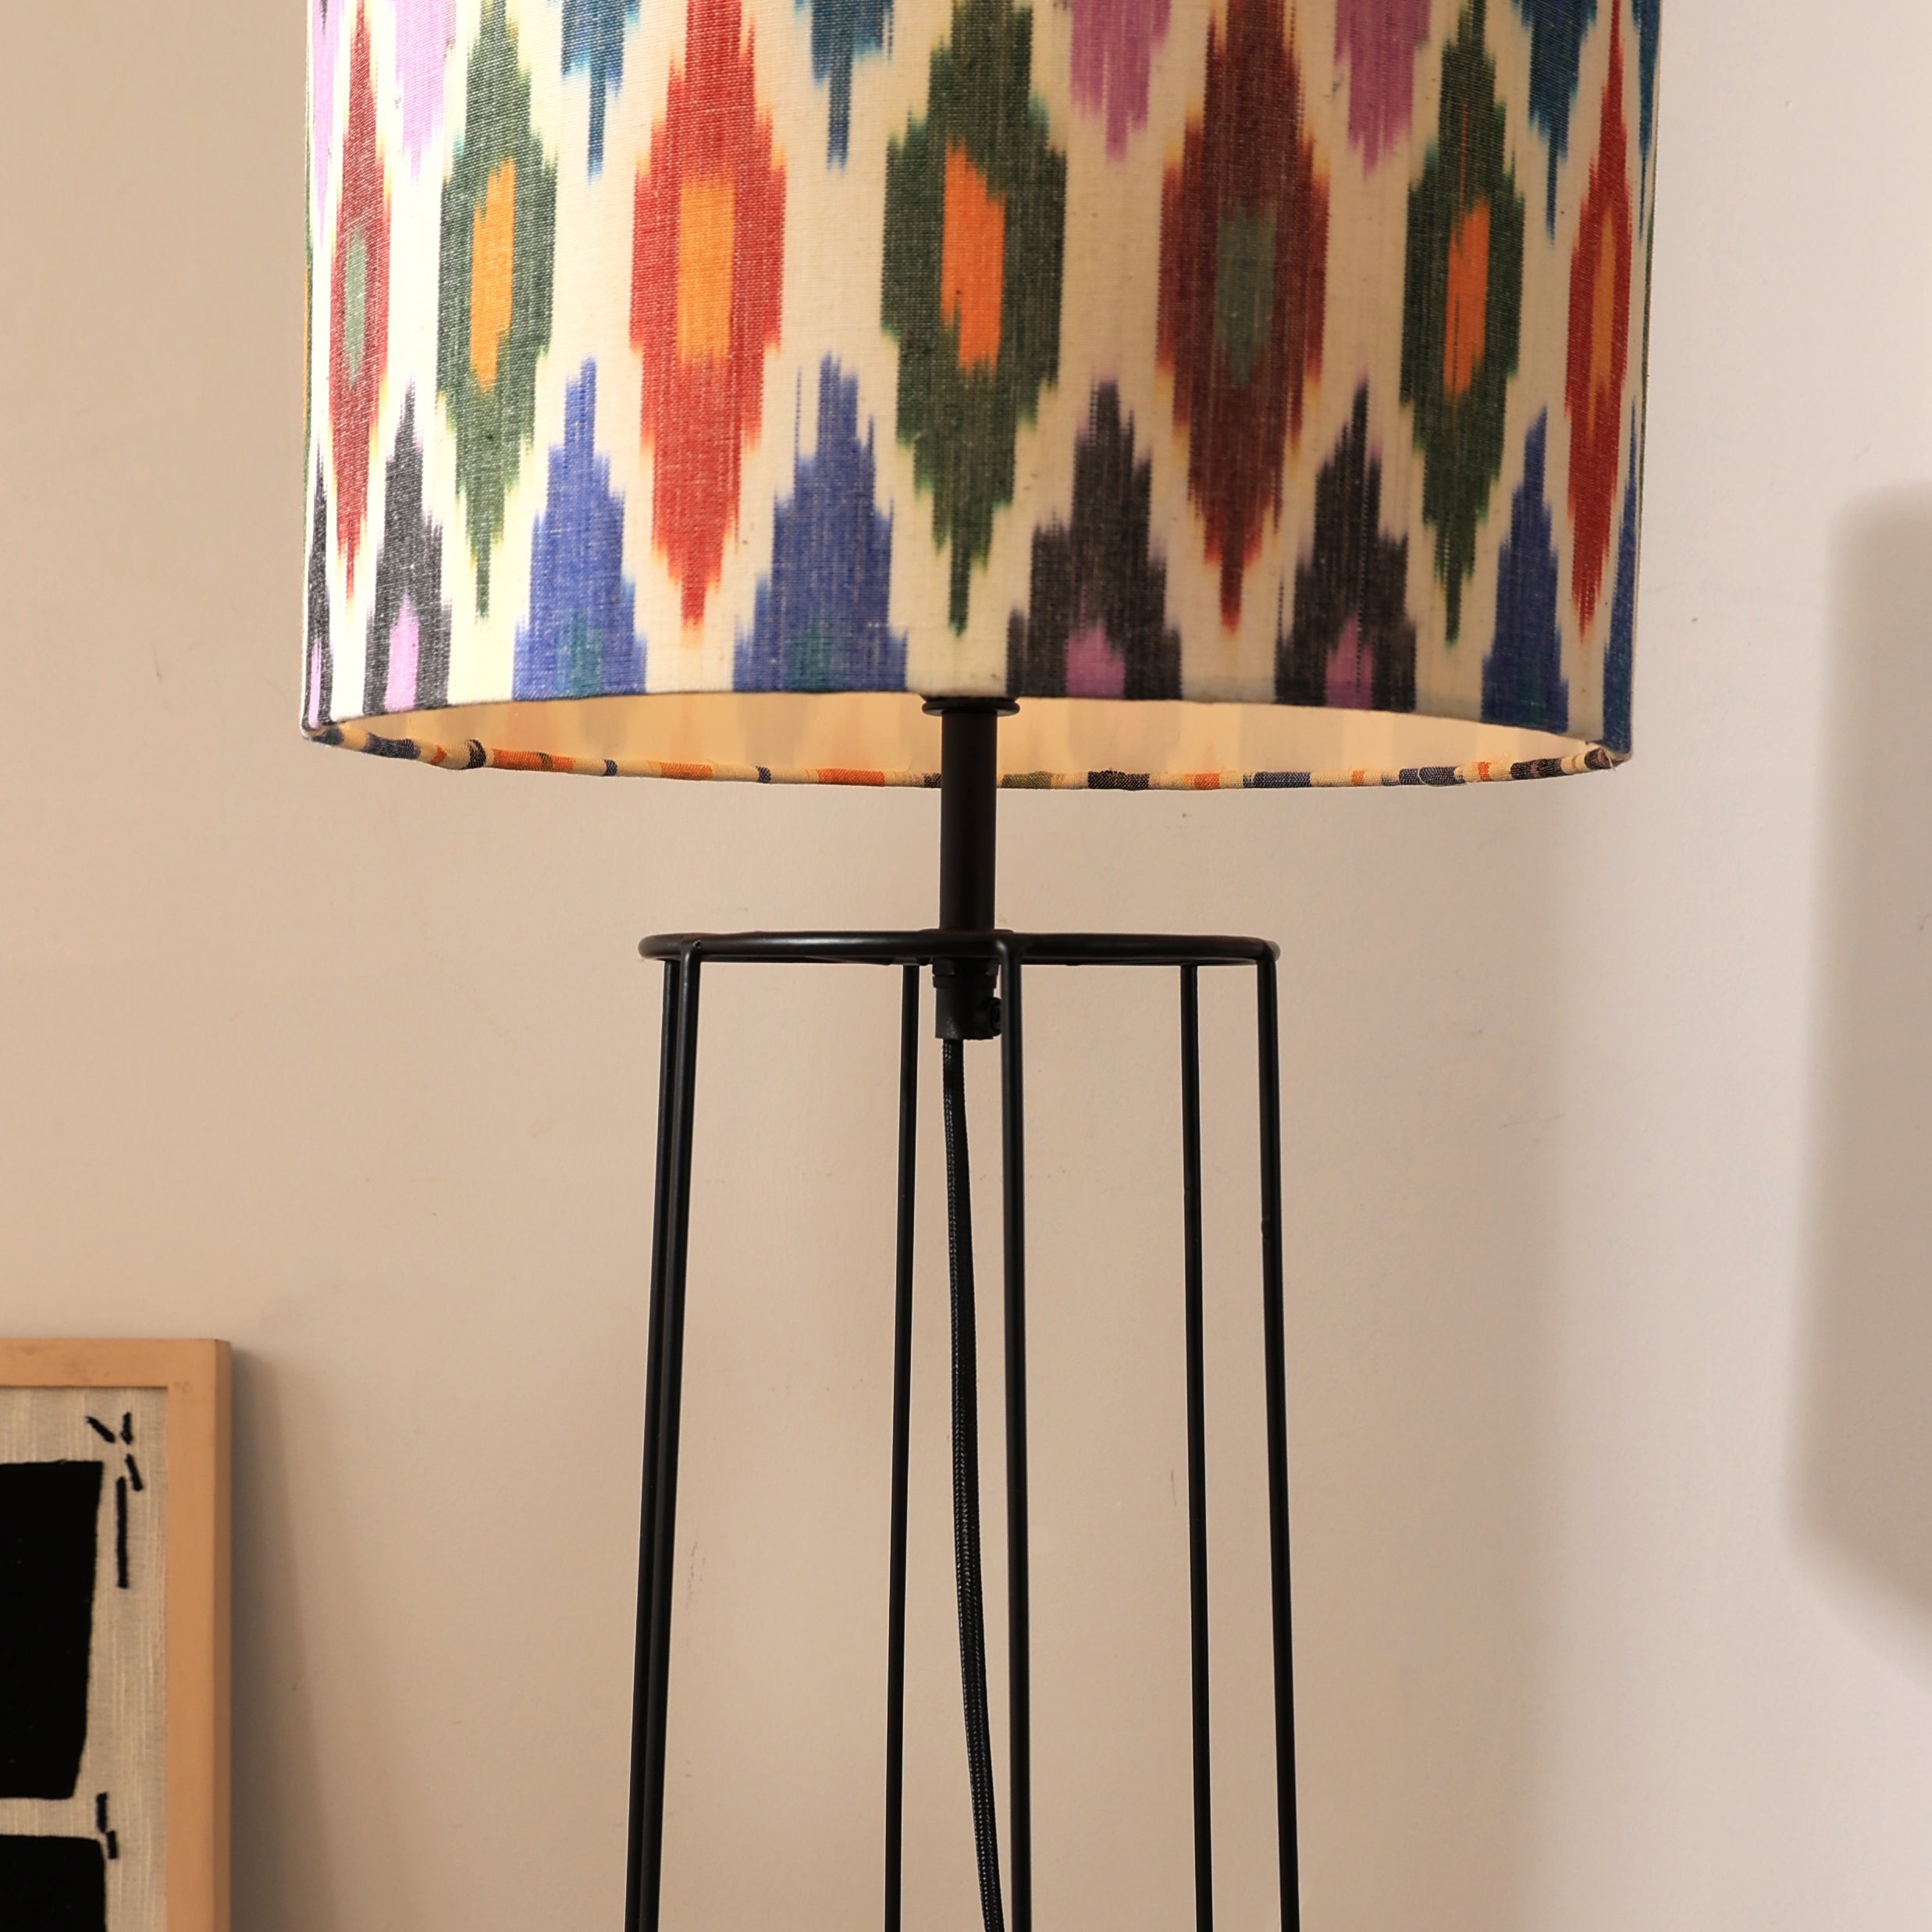 IKKAT Floor Lamp 100 -Ikkat Fabric, Floor Lamp, Indian and Scandinavia fusion, modern lighting, trending floor lamp